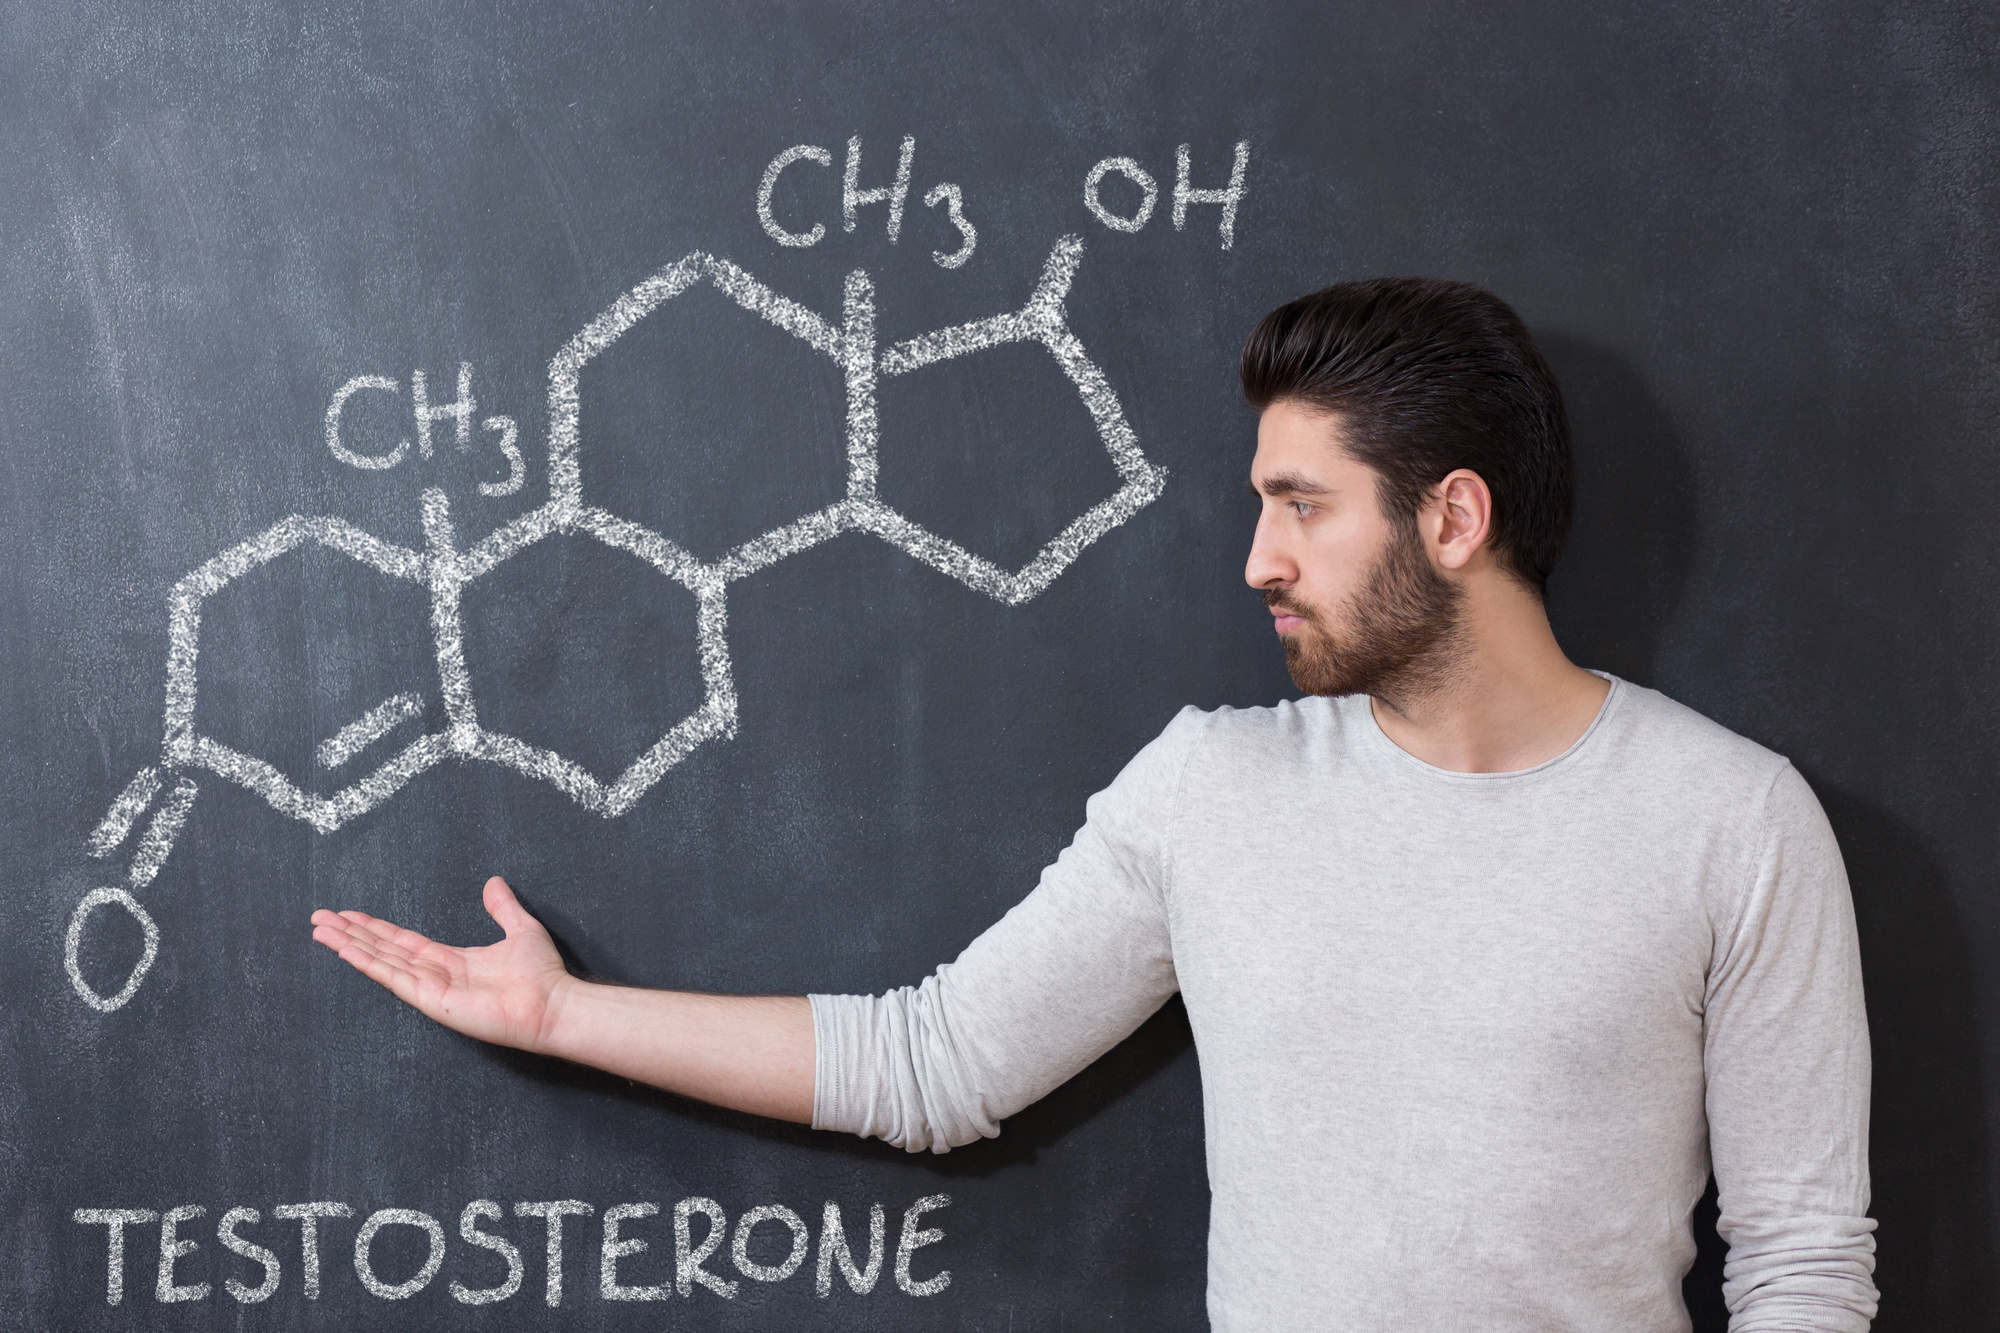 تعرفوا على أسماء أفضل أدوية لزيادة هرمون التستوستيرون